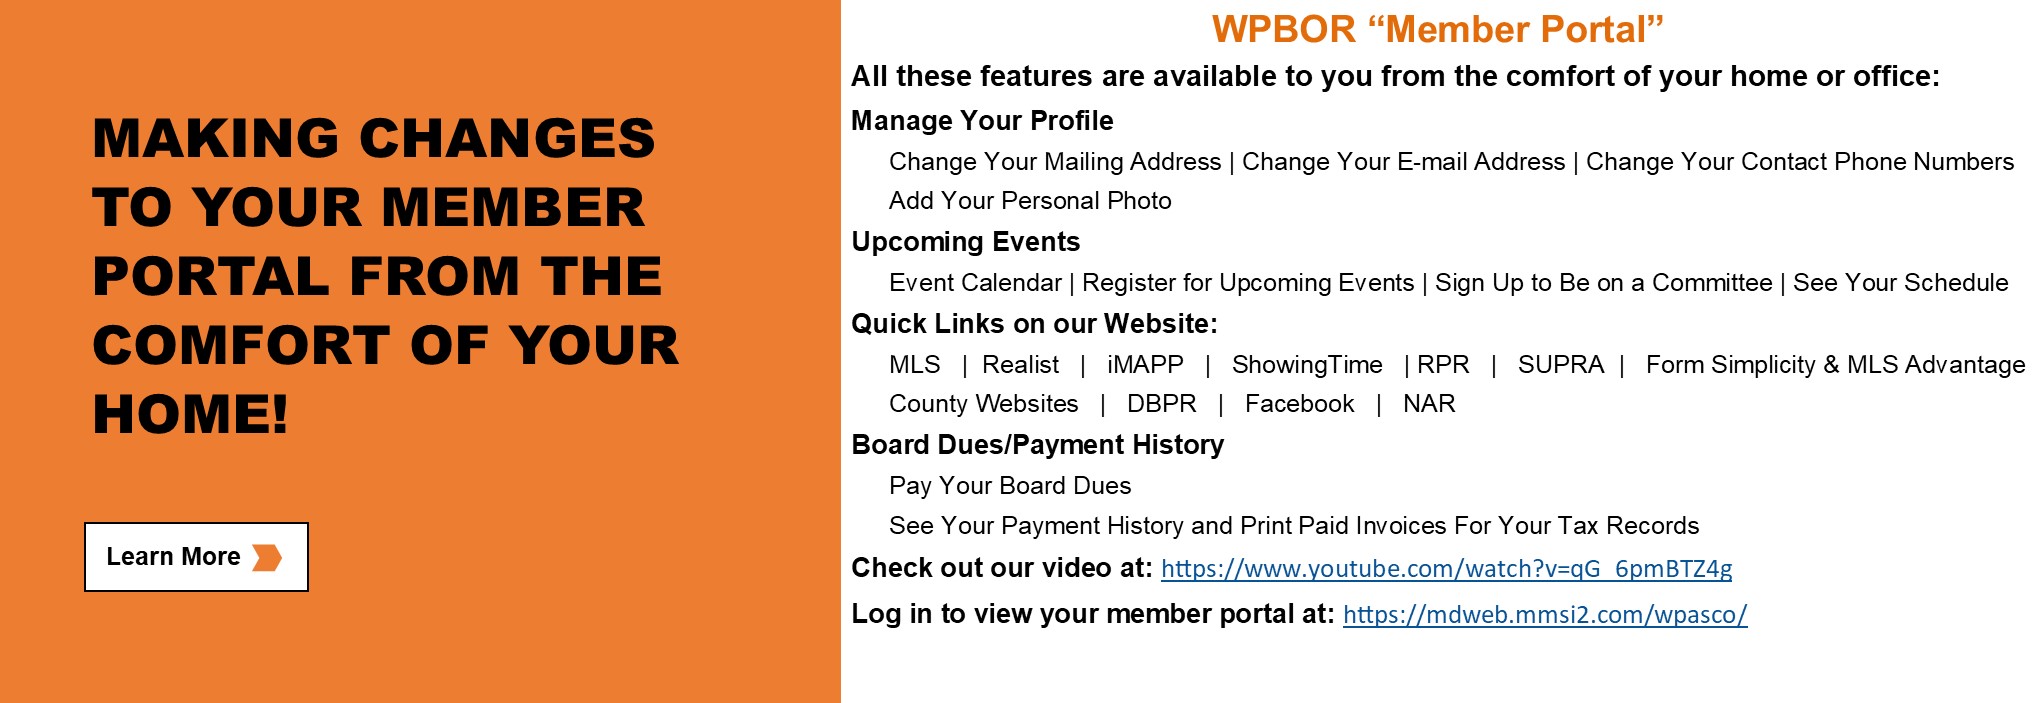 WPBOR_Website_Slider_Member Portal Information